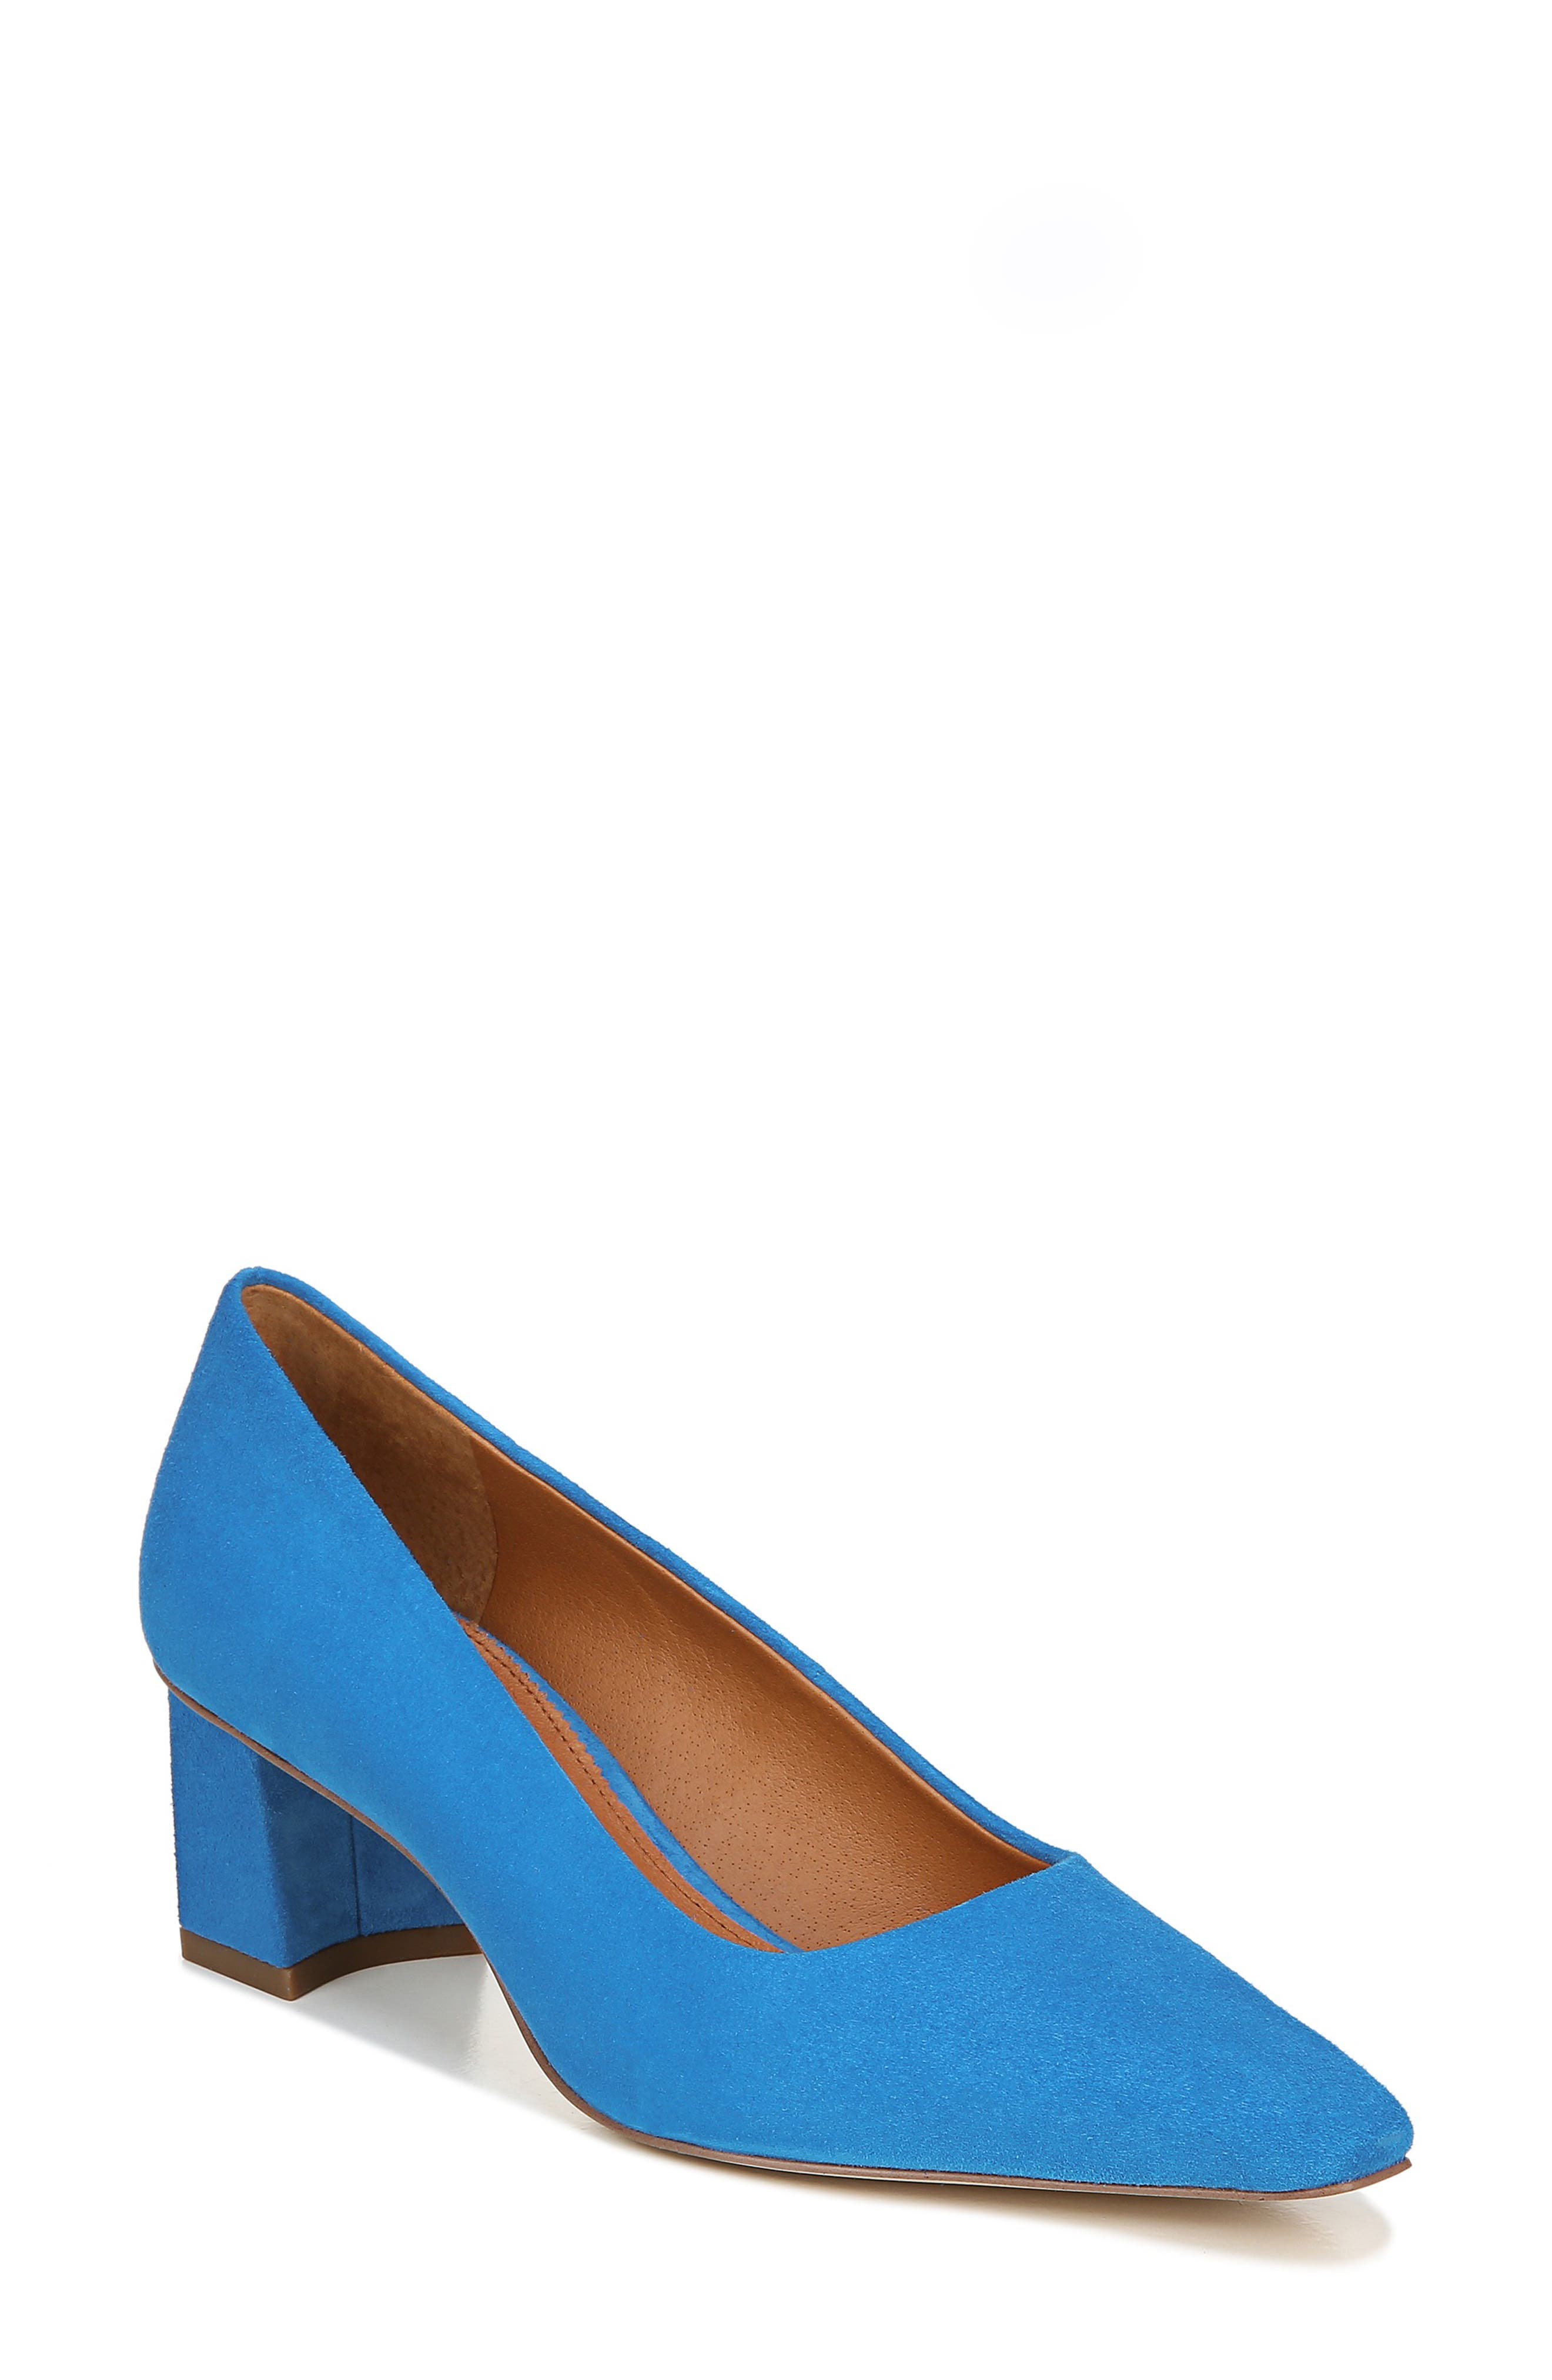 franco sarto blue suede shoes